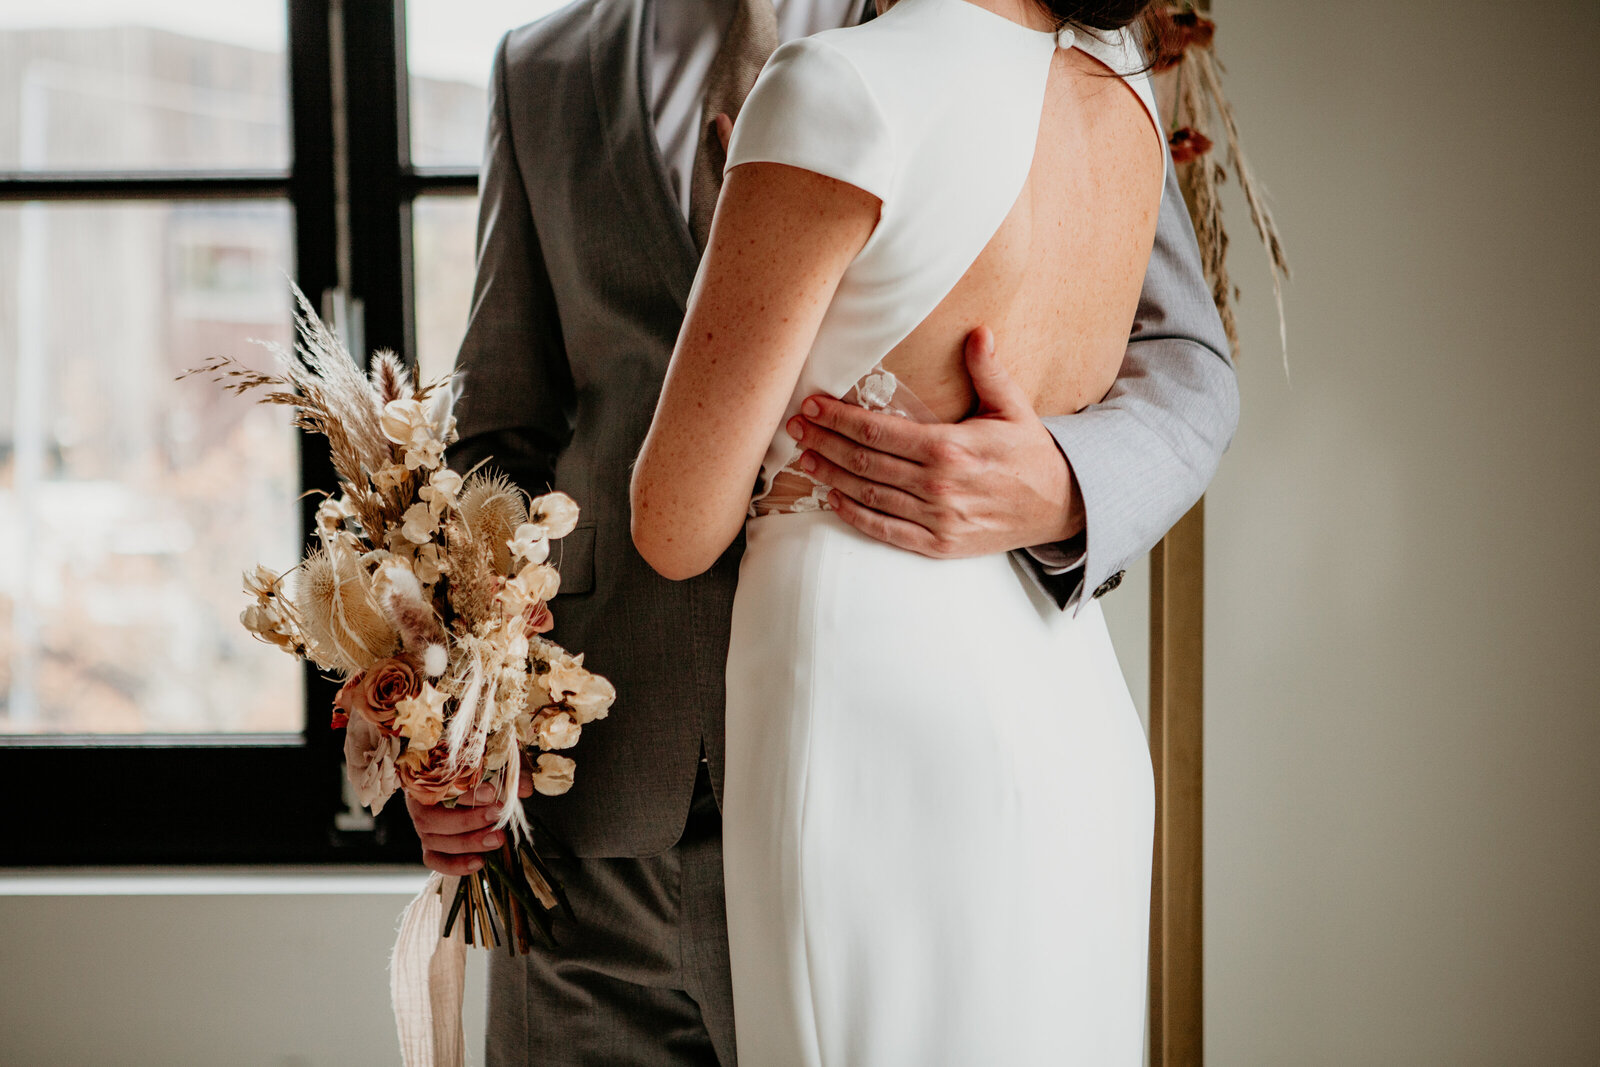 Huwelijk koppel tijdens trouwceremonie met boeket in hand